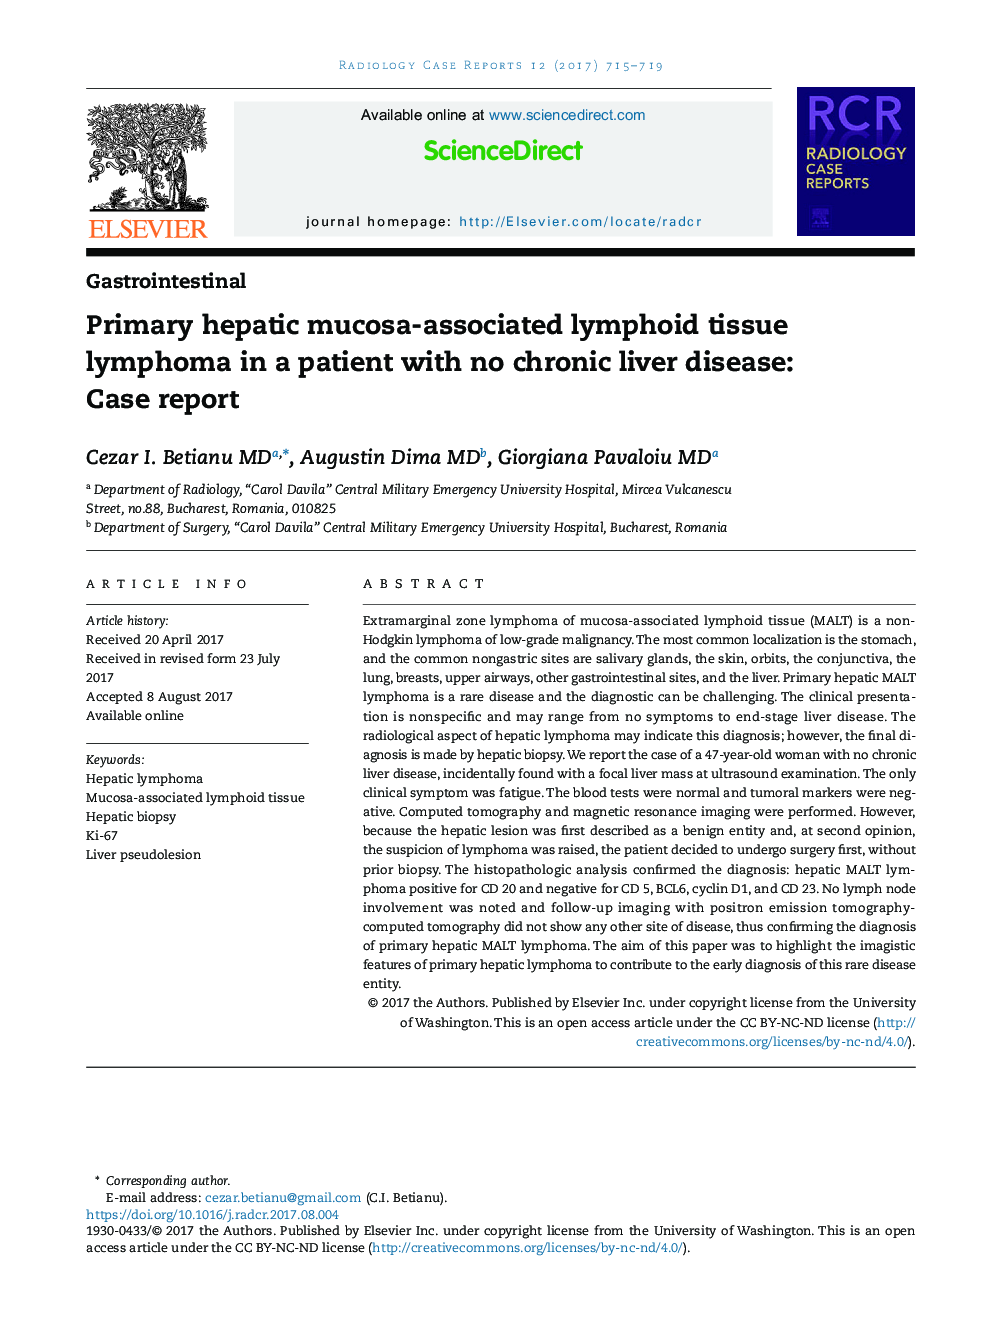 لنفوم بافت لنفوئیدی مرتبط با مخاط روده اولیه در بیمار بدون بیماری مزمن کبدی: گزارش مورد 